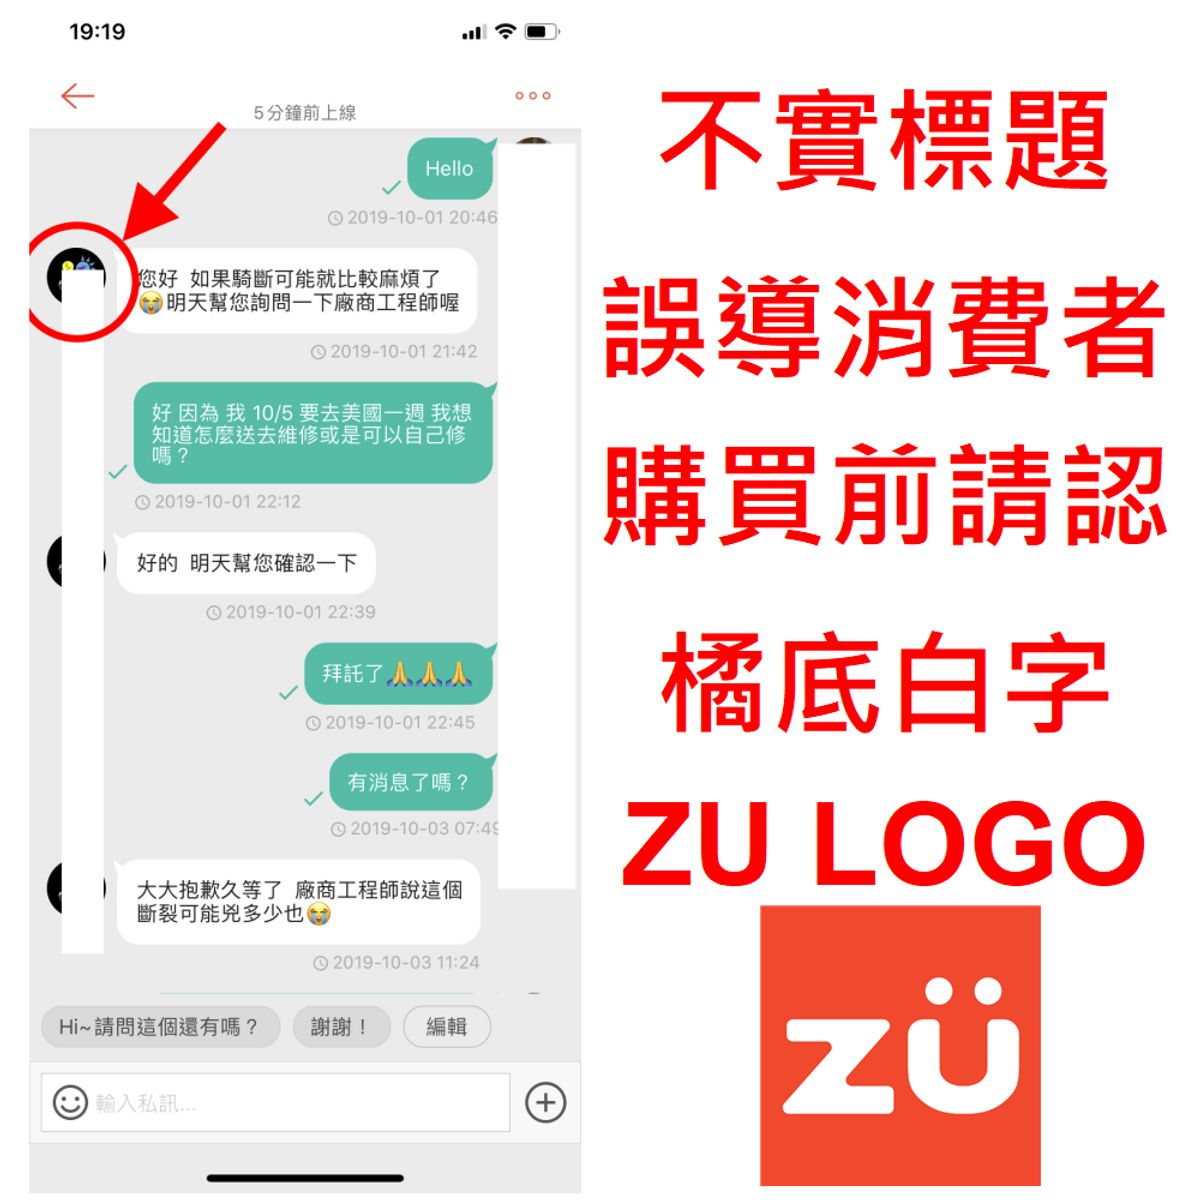 zu 電動滑板車的運費、客服和退貨，PTT和 網友分享的方法：不實誤導搜尋, 內文不是ZU品牌的爭議客訴事件，請認明橘色ZU LOGO,  避免被誤導搜尋